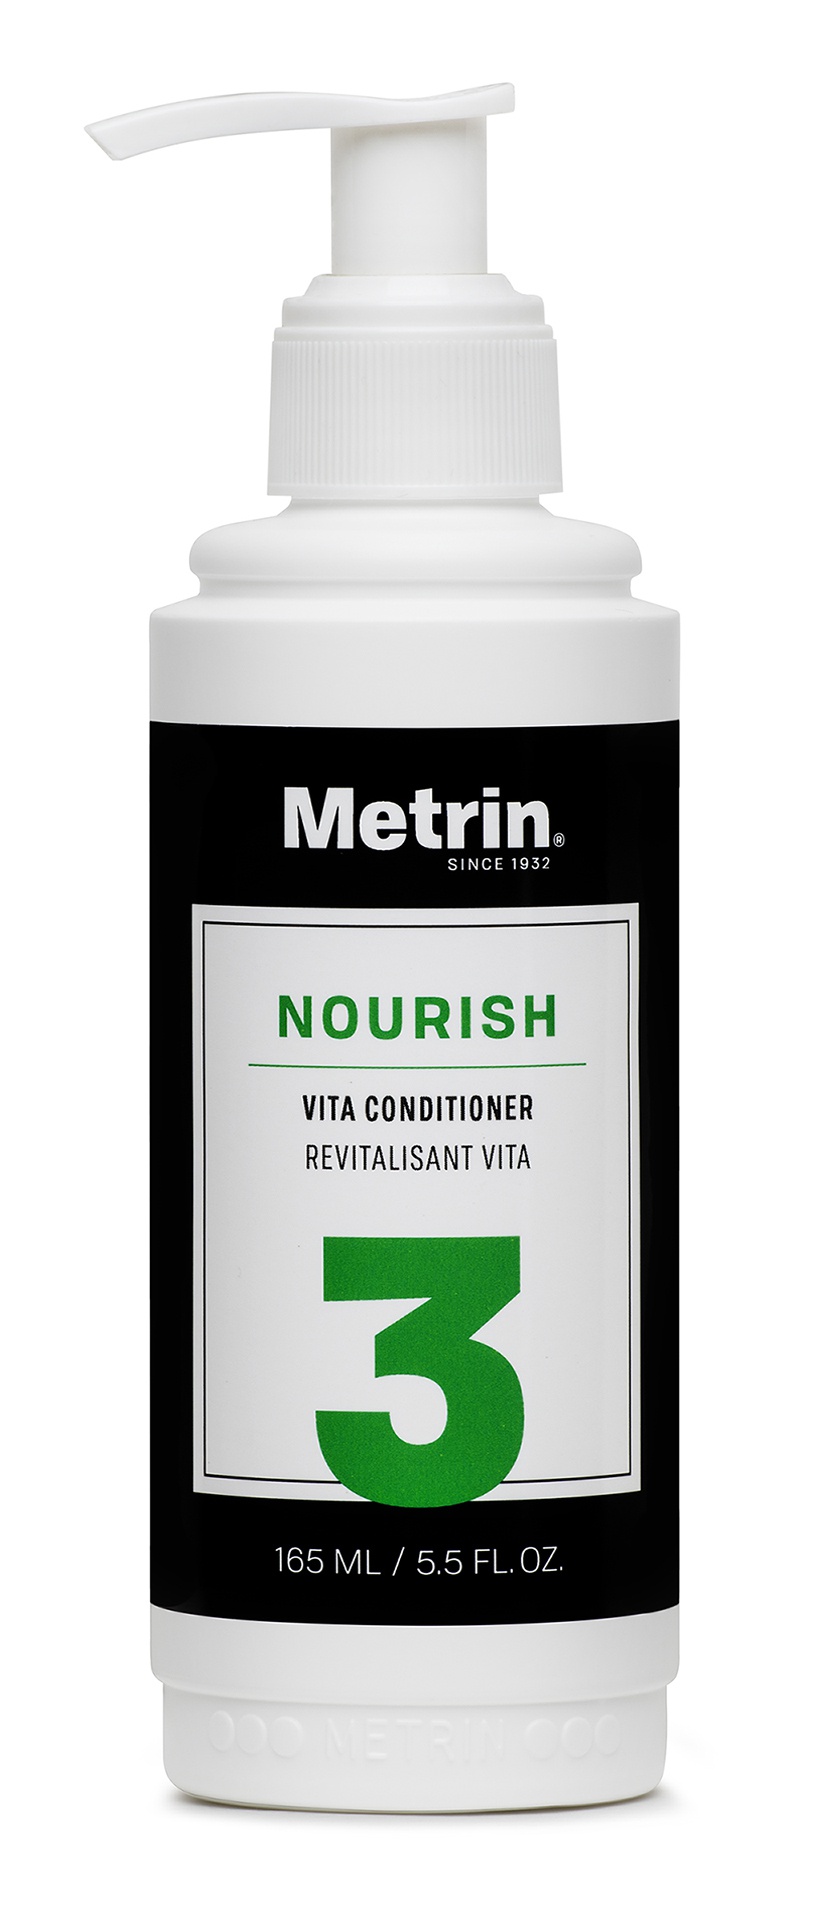 Metrin Vita Conditioner For Him